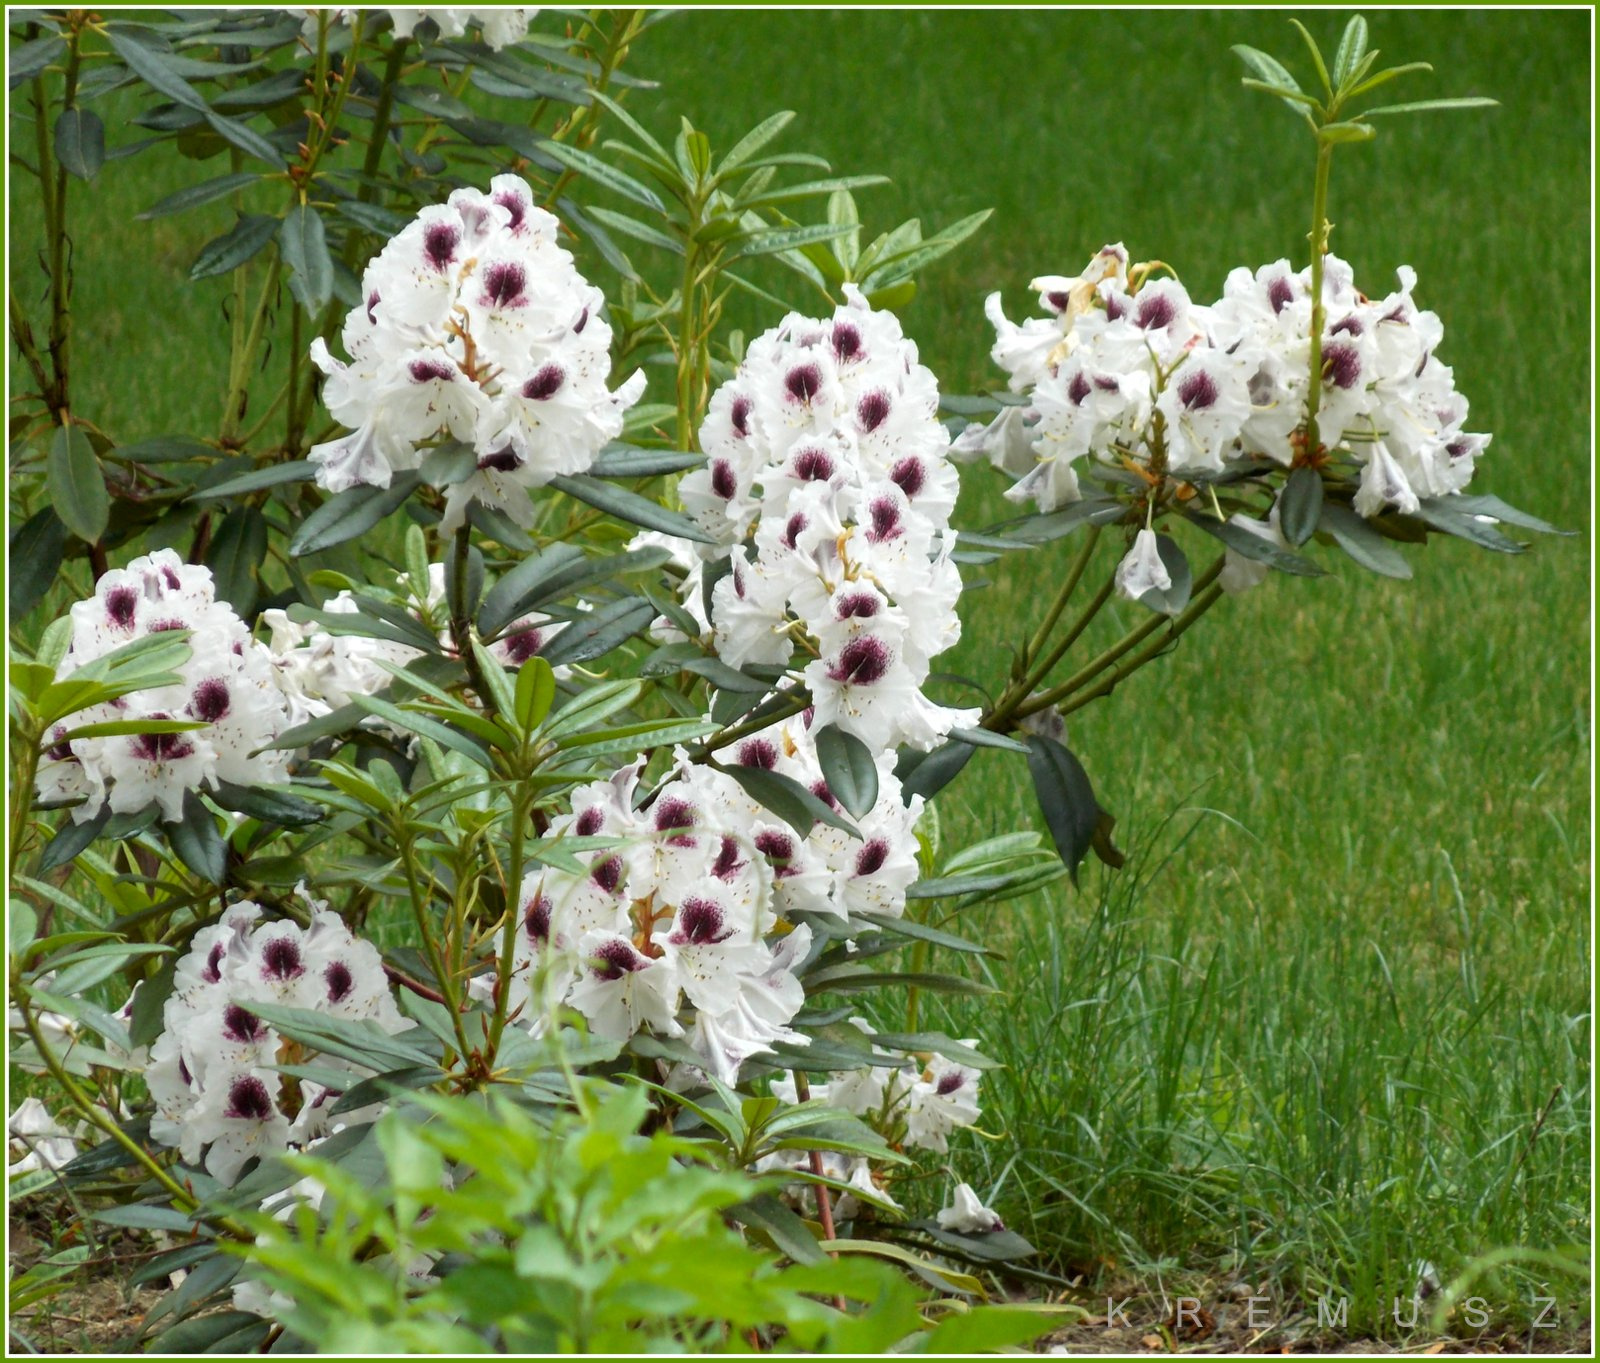 Foltos rododendron